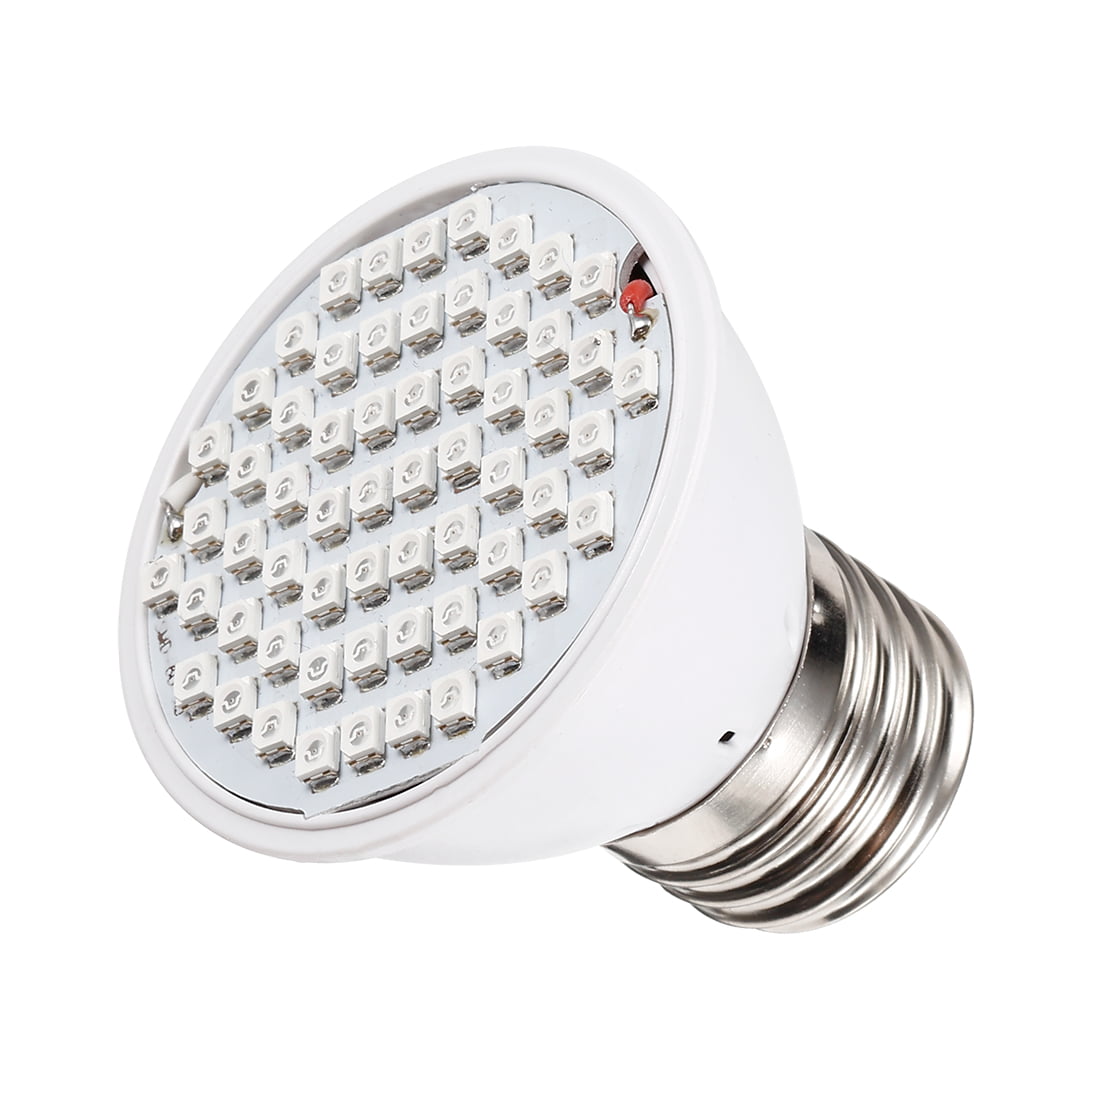 JKL LED Grow Light Plant Lights Indoor E27 Bulb Greenhouse 4W 60 LEDs 110V For 